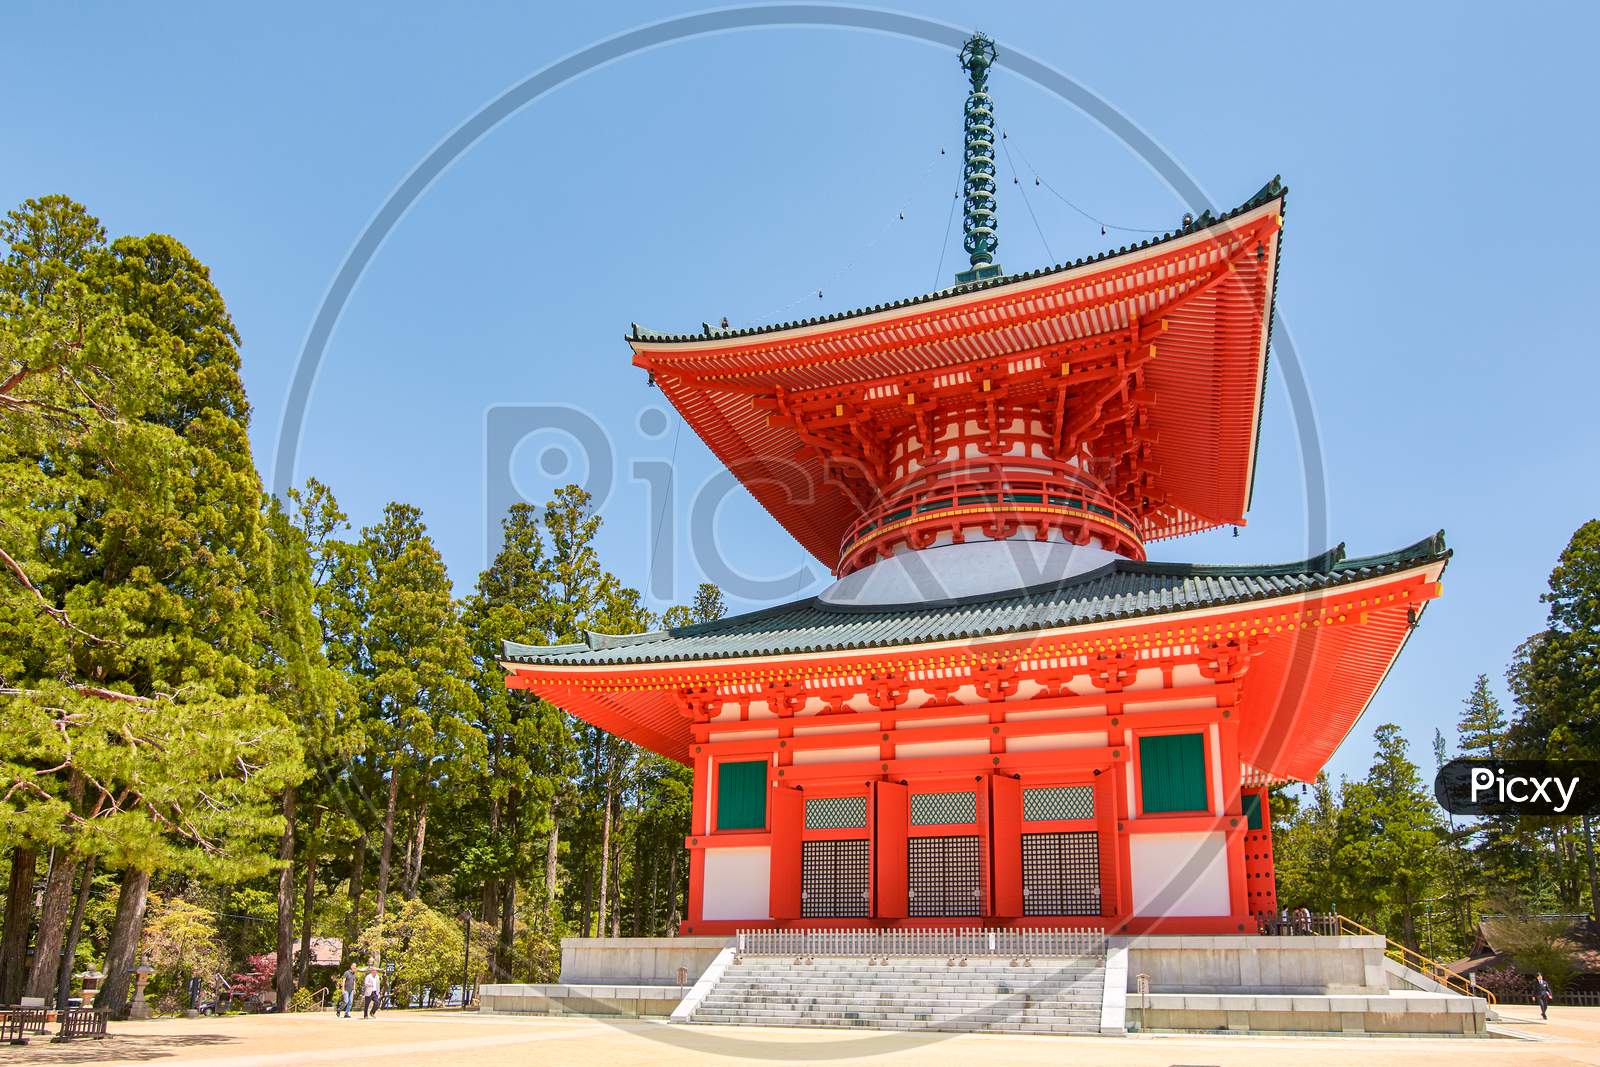 Konpon Daito Pagoda At The Danjo Garan Buddhist Temple Complex Of Koyasan, Japan